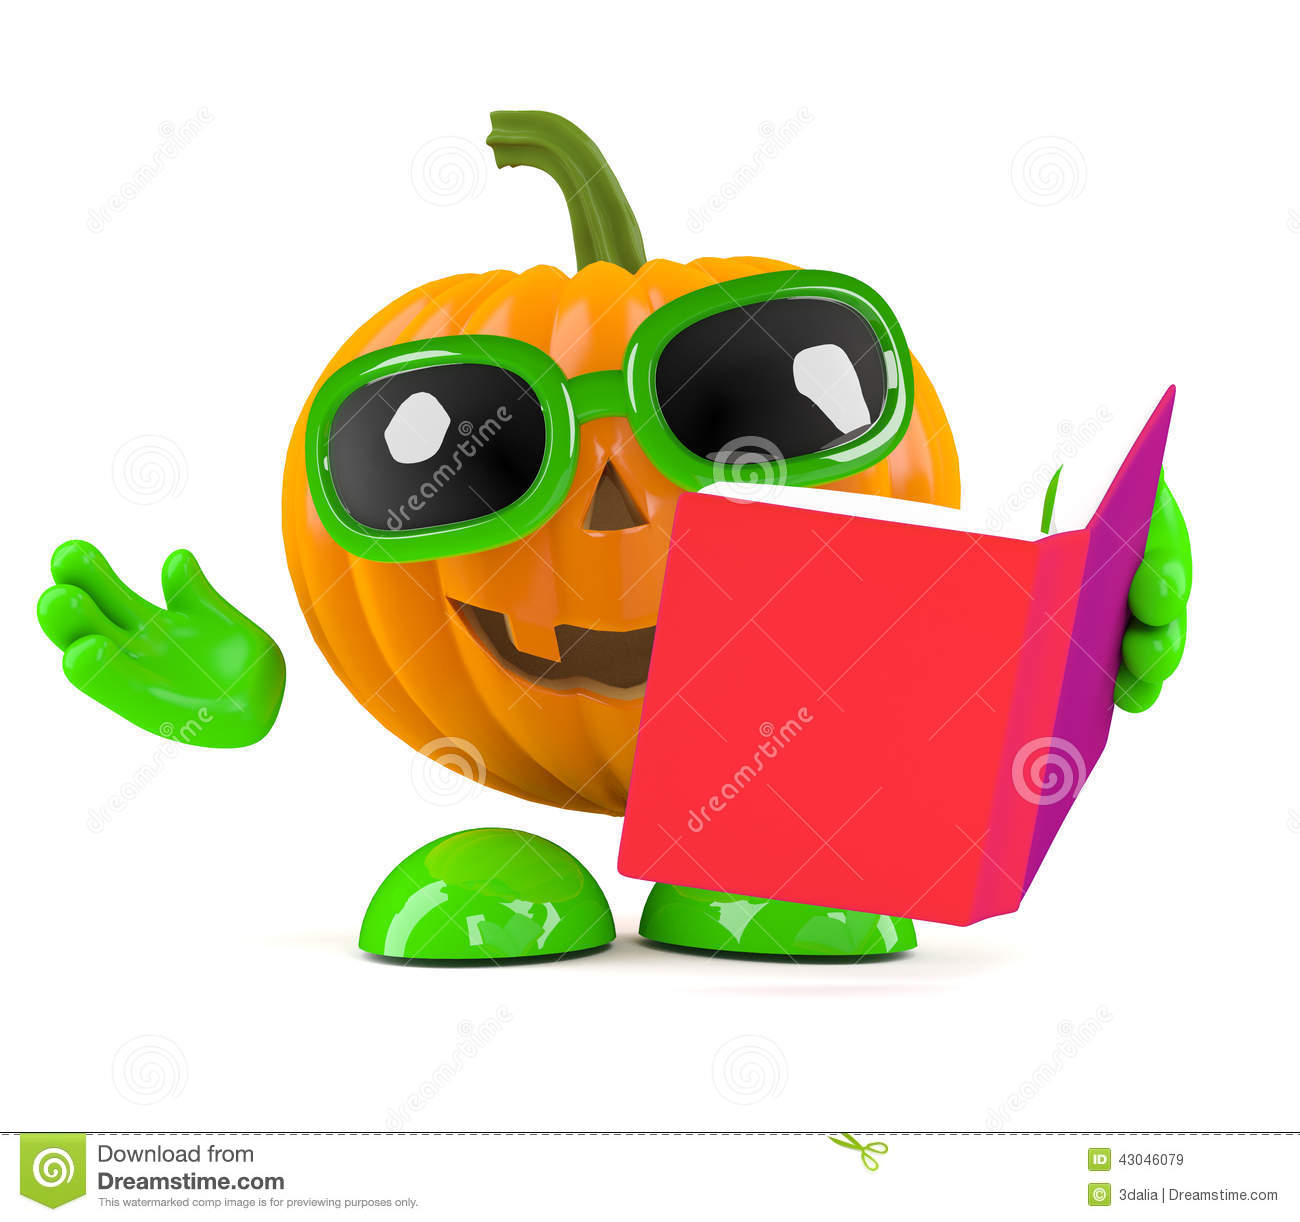 pumpkin clipart reading